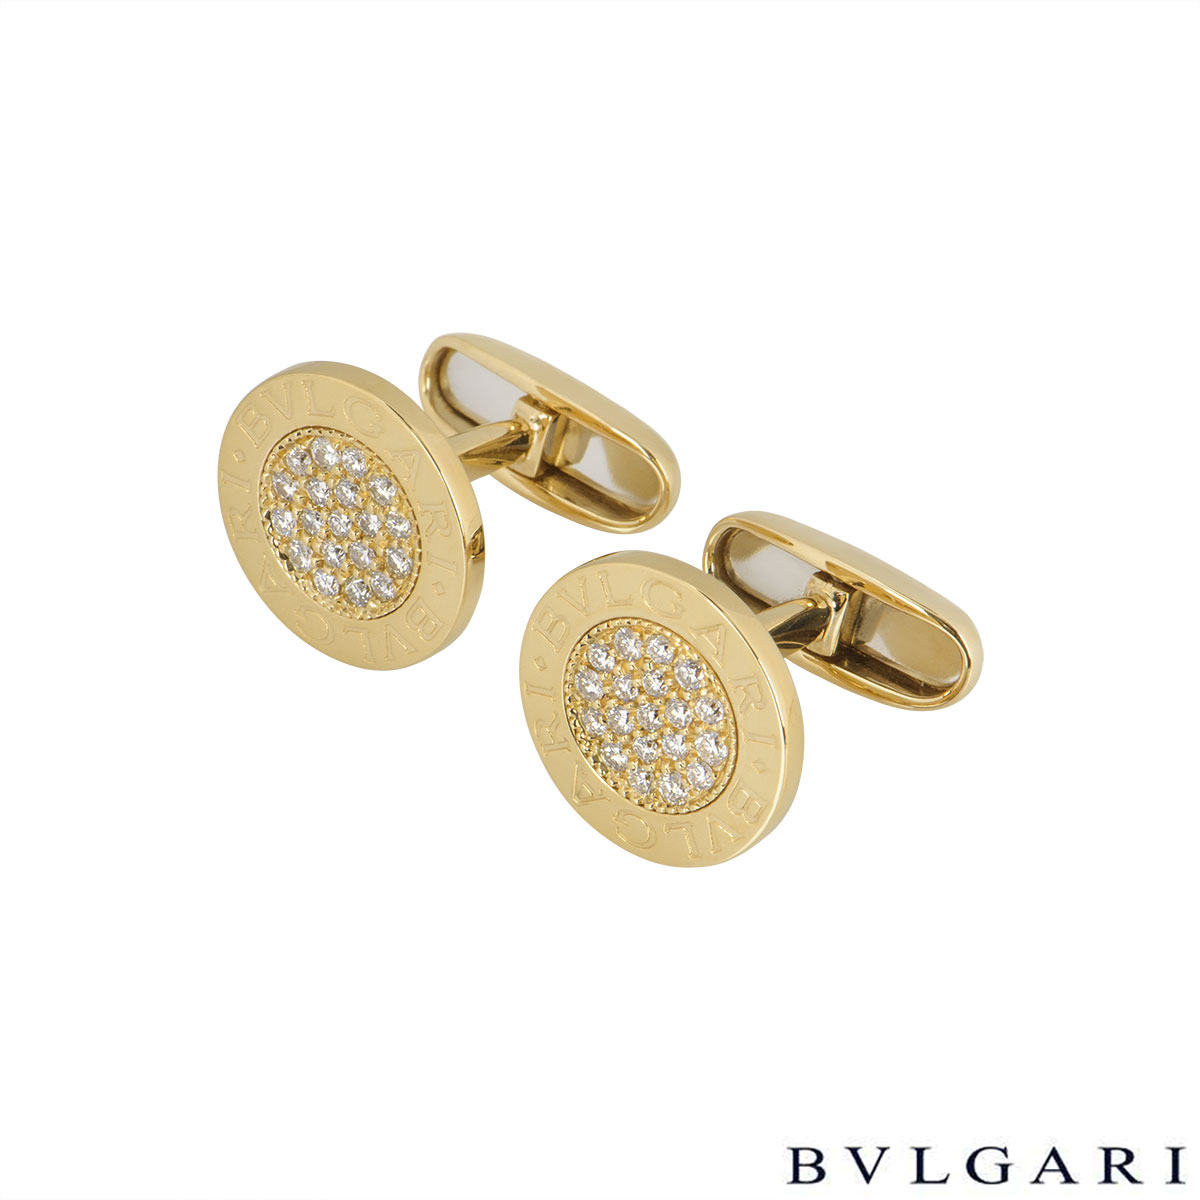 Bvlgari Yellow Gold Bvlgari Bvlgari Diamond Cufflinks | Rich Diamonds